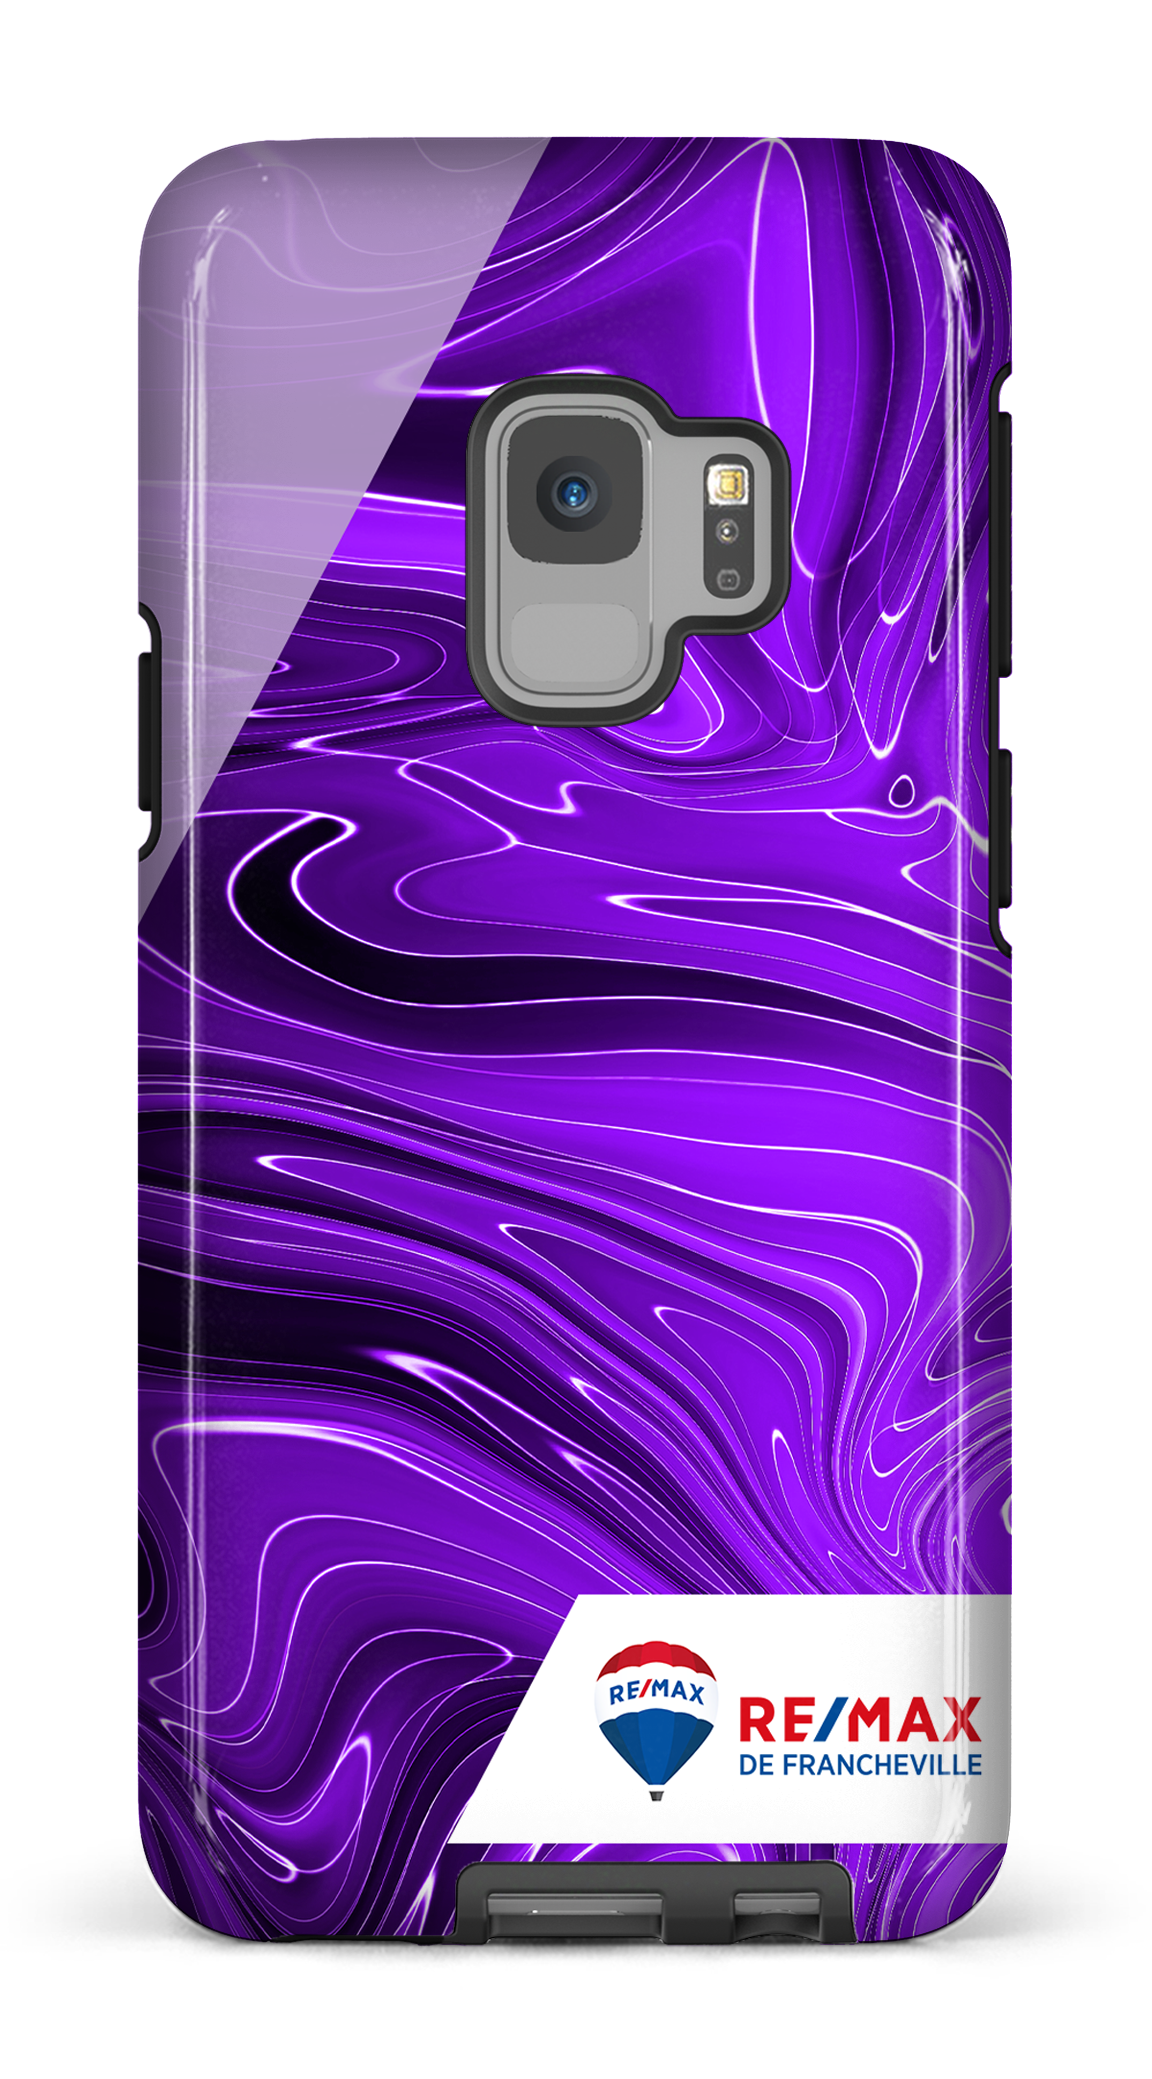 Peinture marbrée sombre violette de Francheville - Galaxy S9